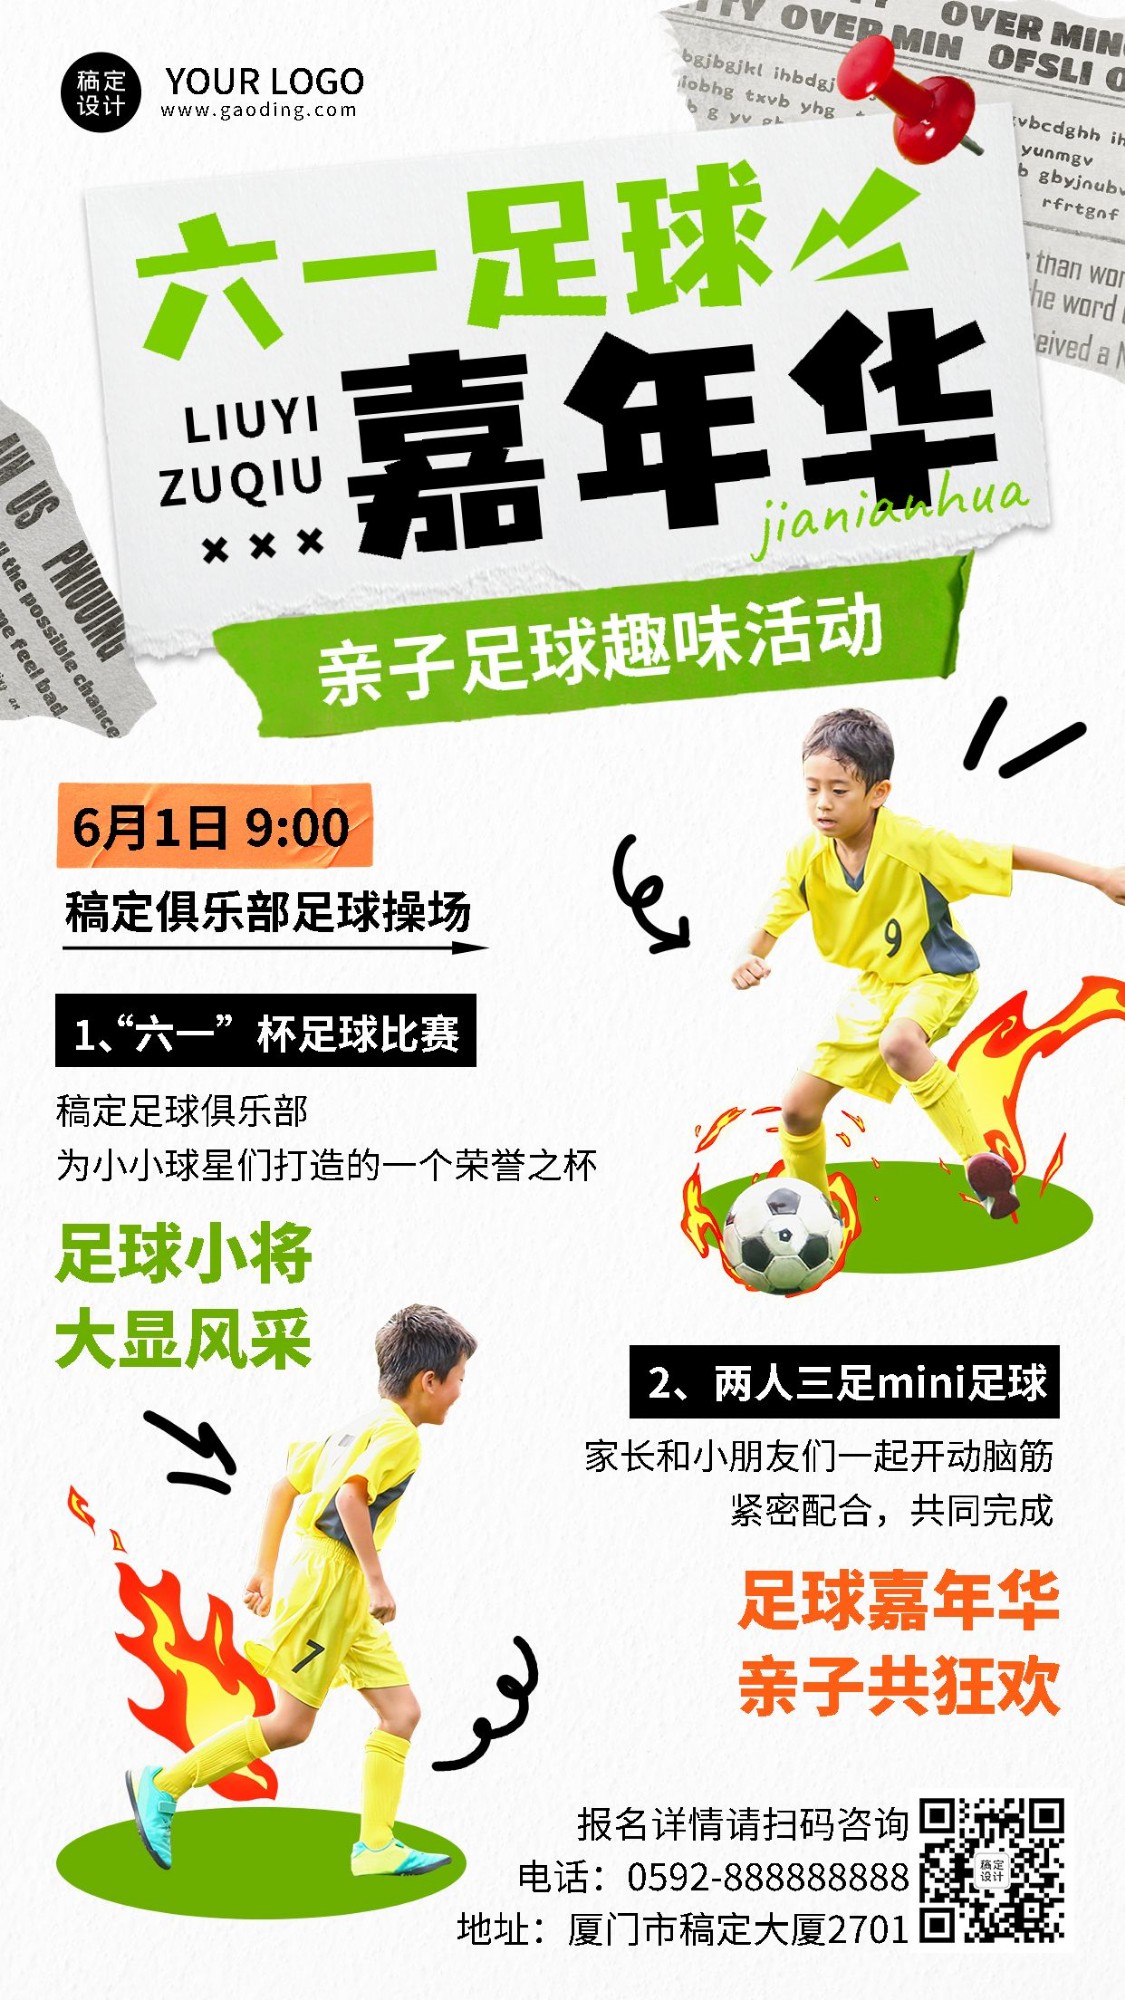 六一儿童节教育机构亲子活动足球嘉年华活动宣传手机海报